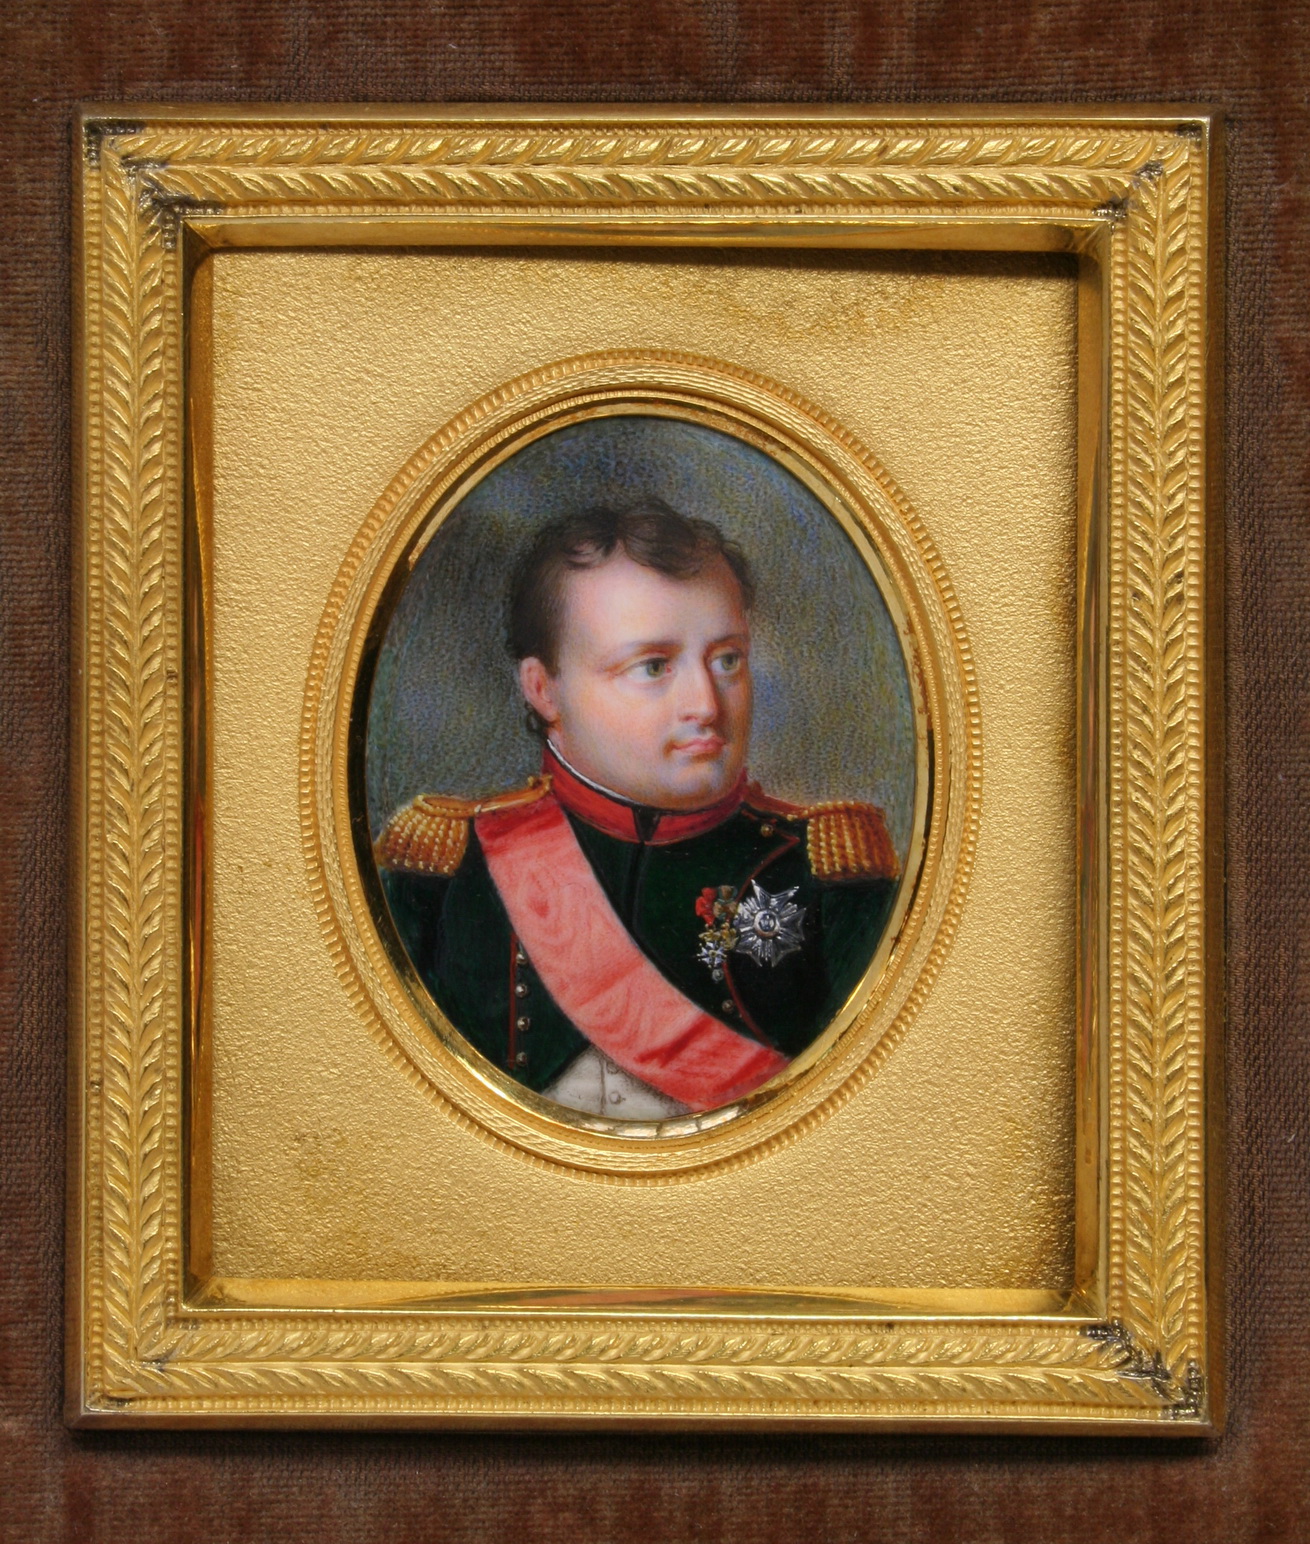 Miniature de Napoléon - Patrimoine Charles-André COLONNA WALEWSKI, en ligne directe de Napoléon